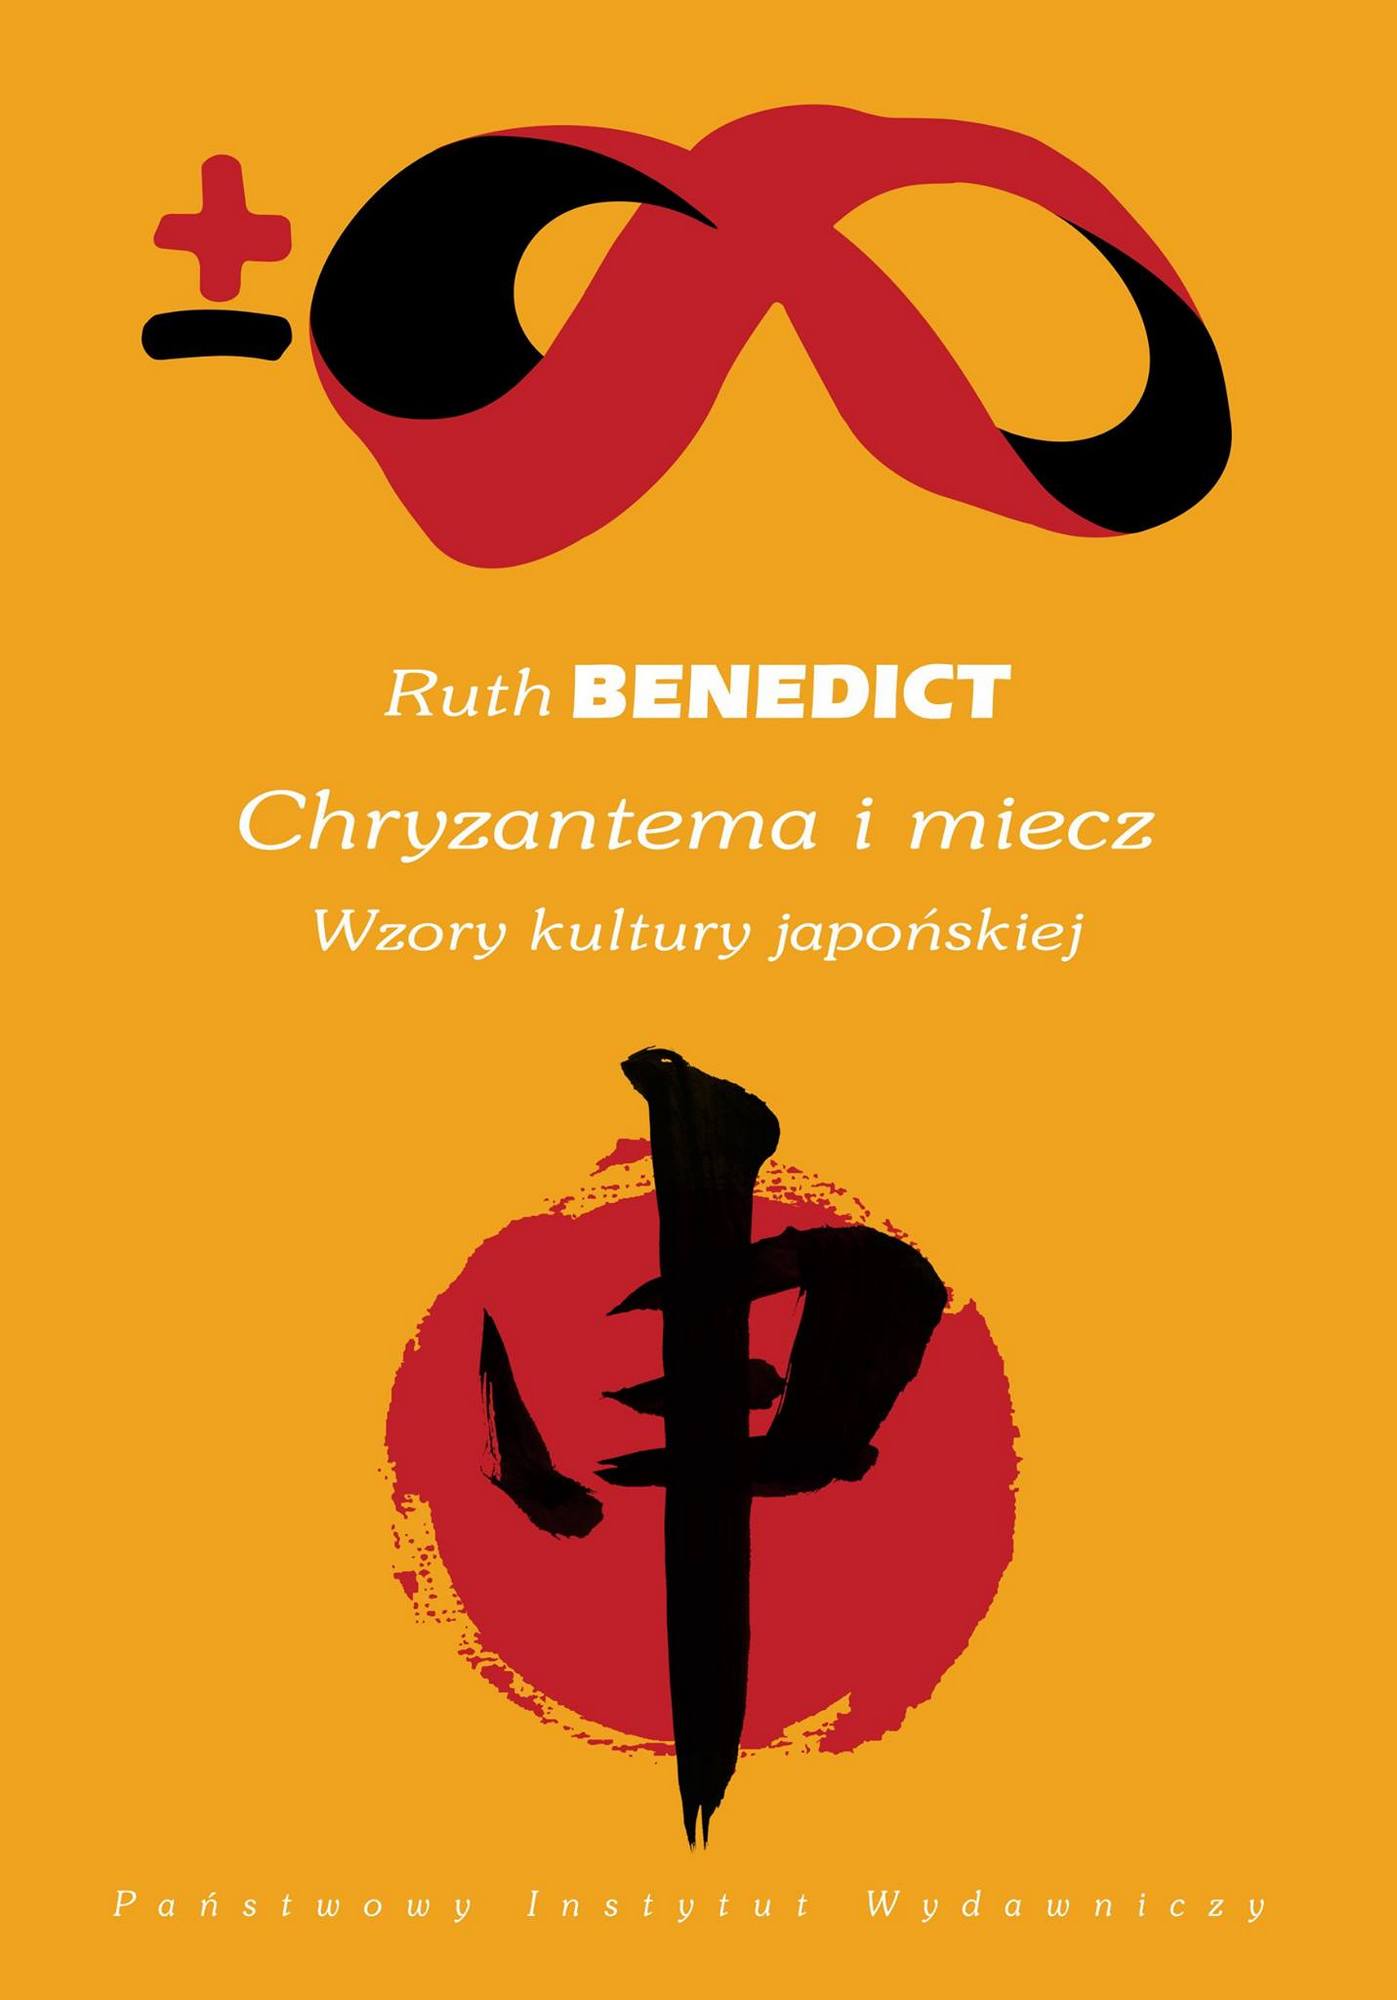 Ruth Benedict, „Chryzantema i miecz. Wzory kultury japońskiej” – okładka (źródło: materiały prasowe)